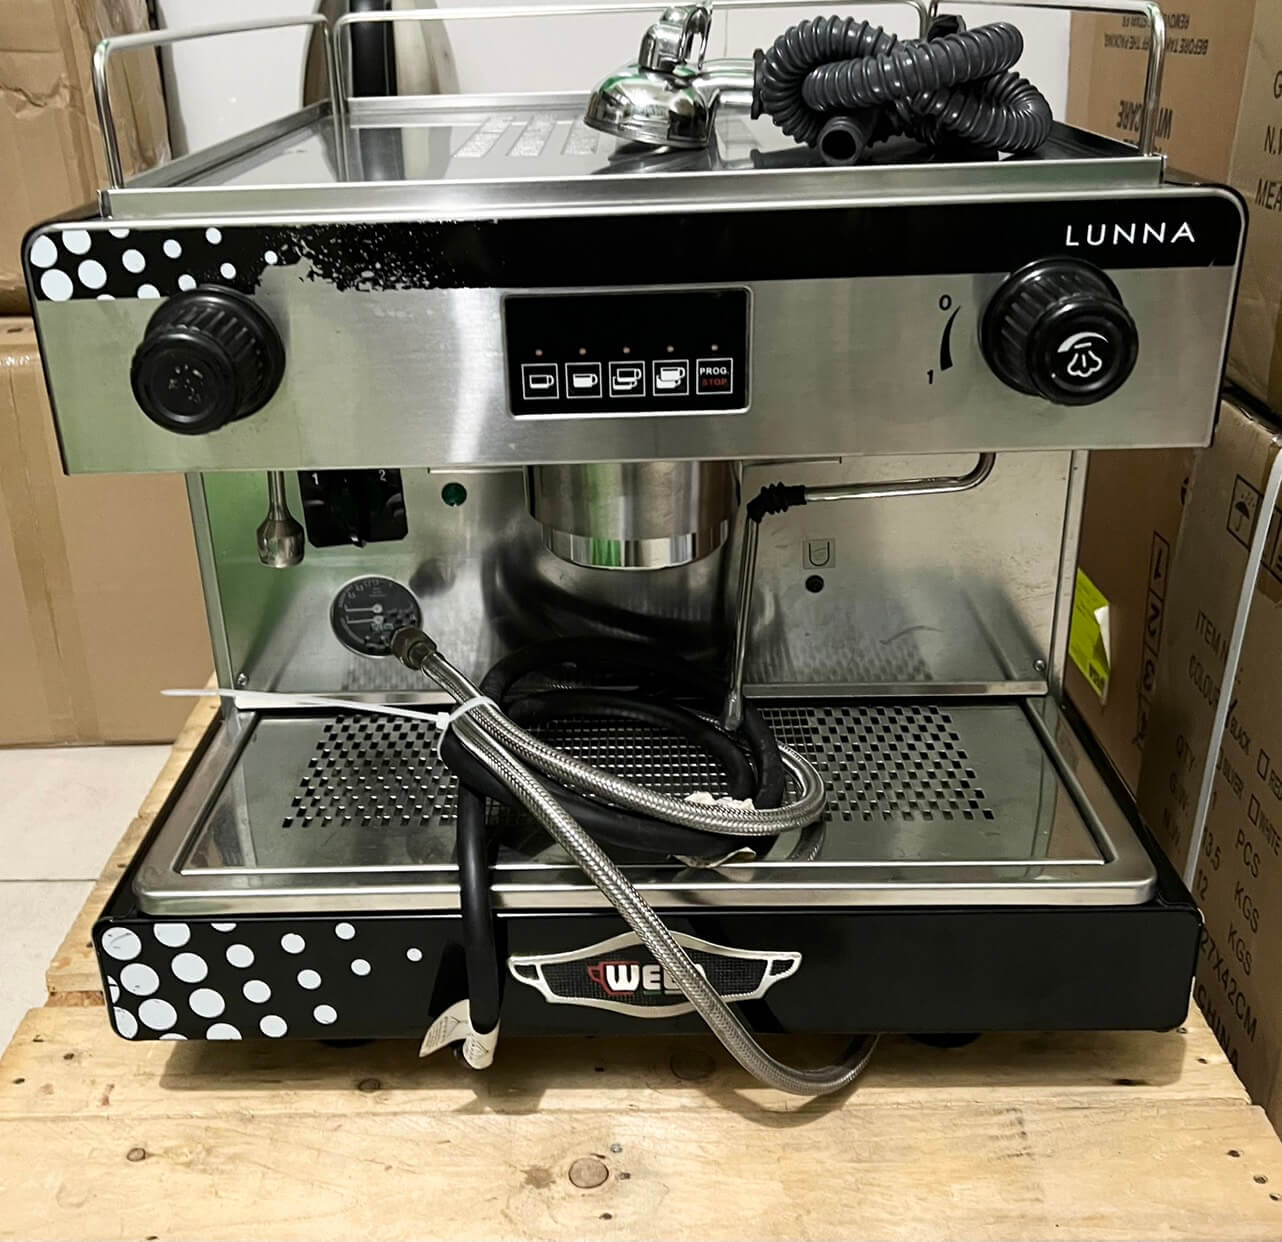 Thanh lý máy pha cà phê Wega Lunna - 1 Group